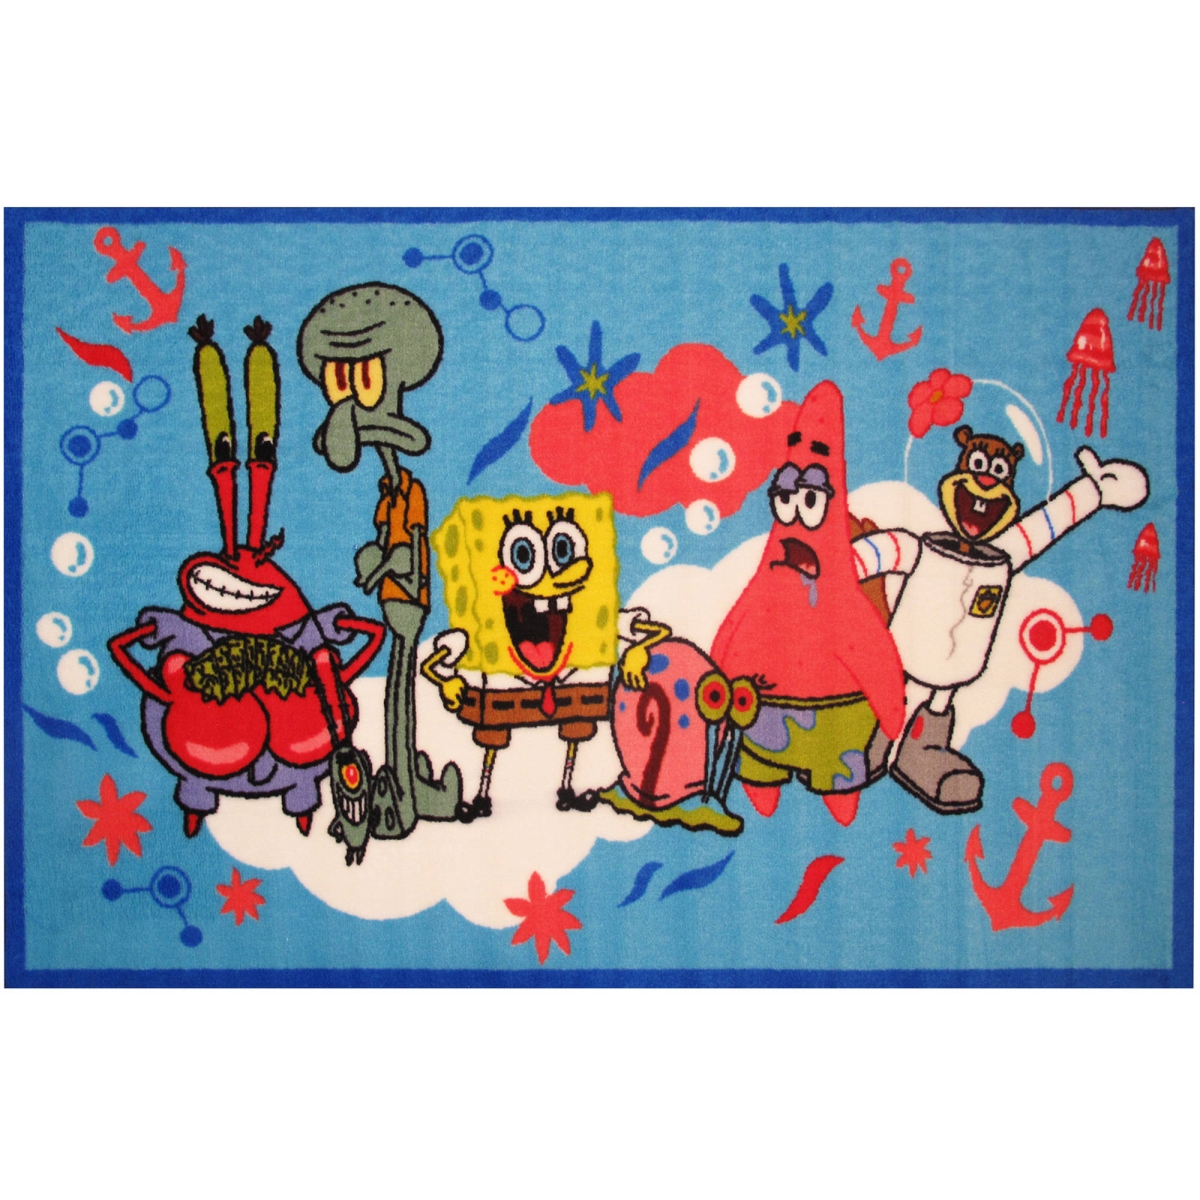 Fun Rug Sb-15 1929 19 X 29 In. Nickelodeon Spongebob & Friends Kids Rugs, Multicolor